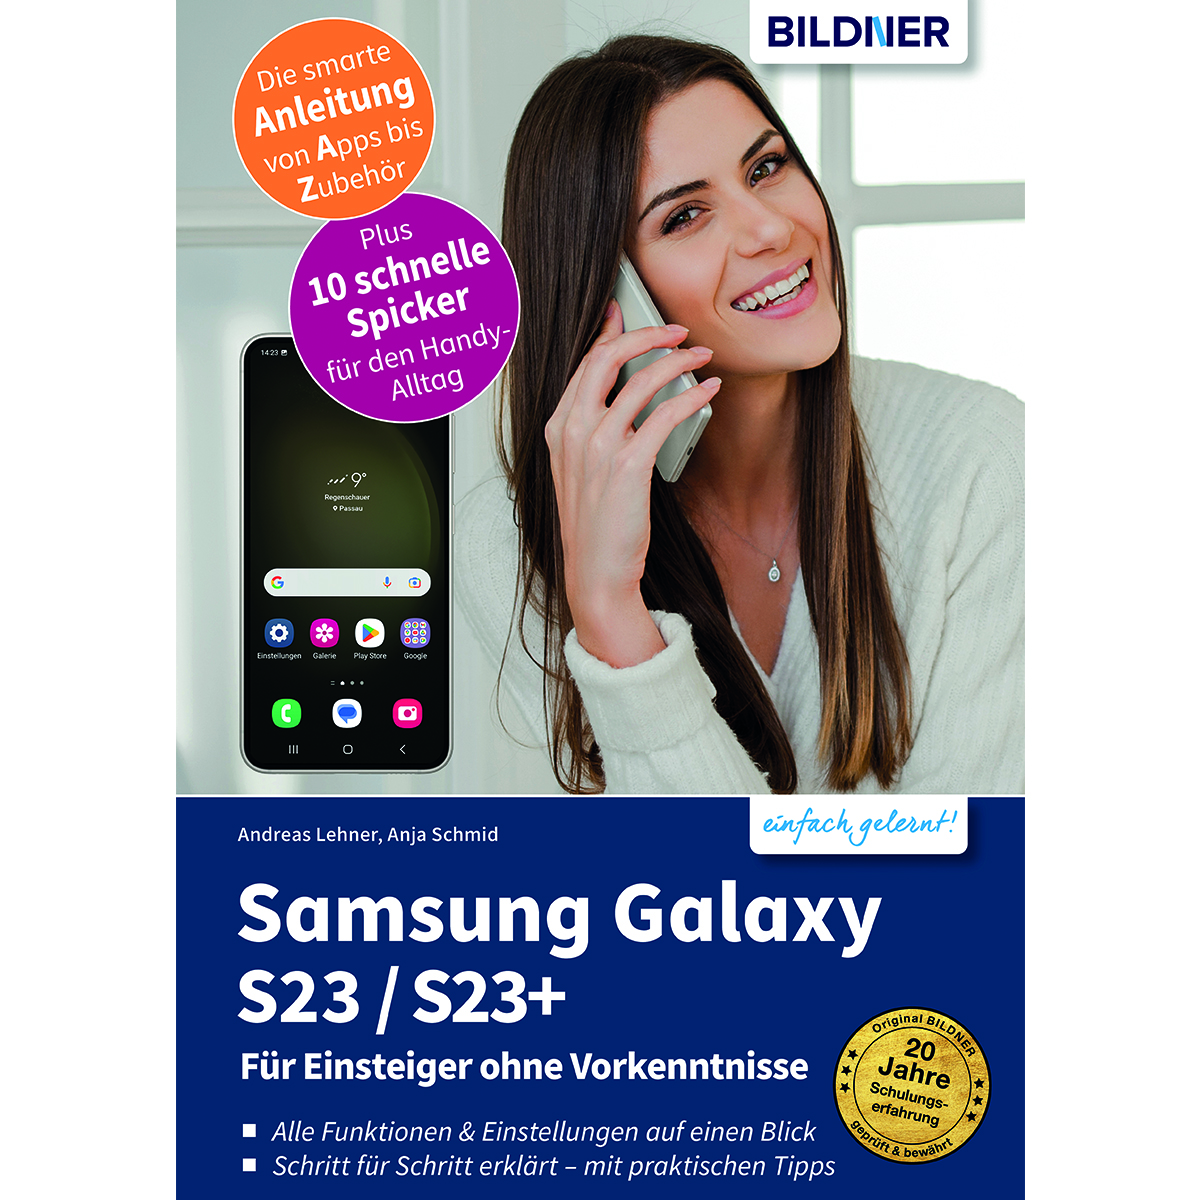 – Samsung Für Einsteiger Vorkenntnisse Galaxy S23/S23+ ohne